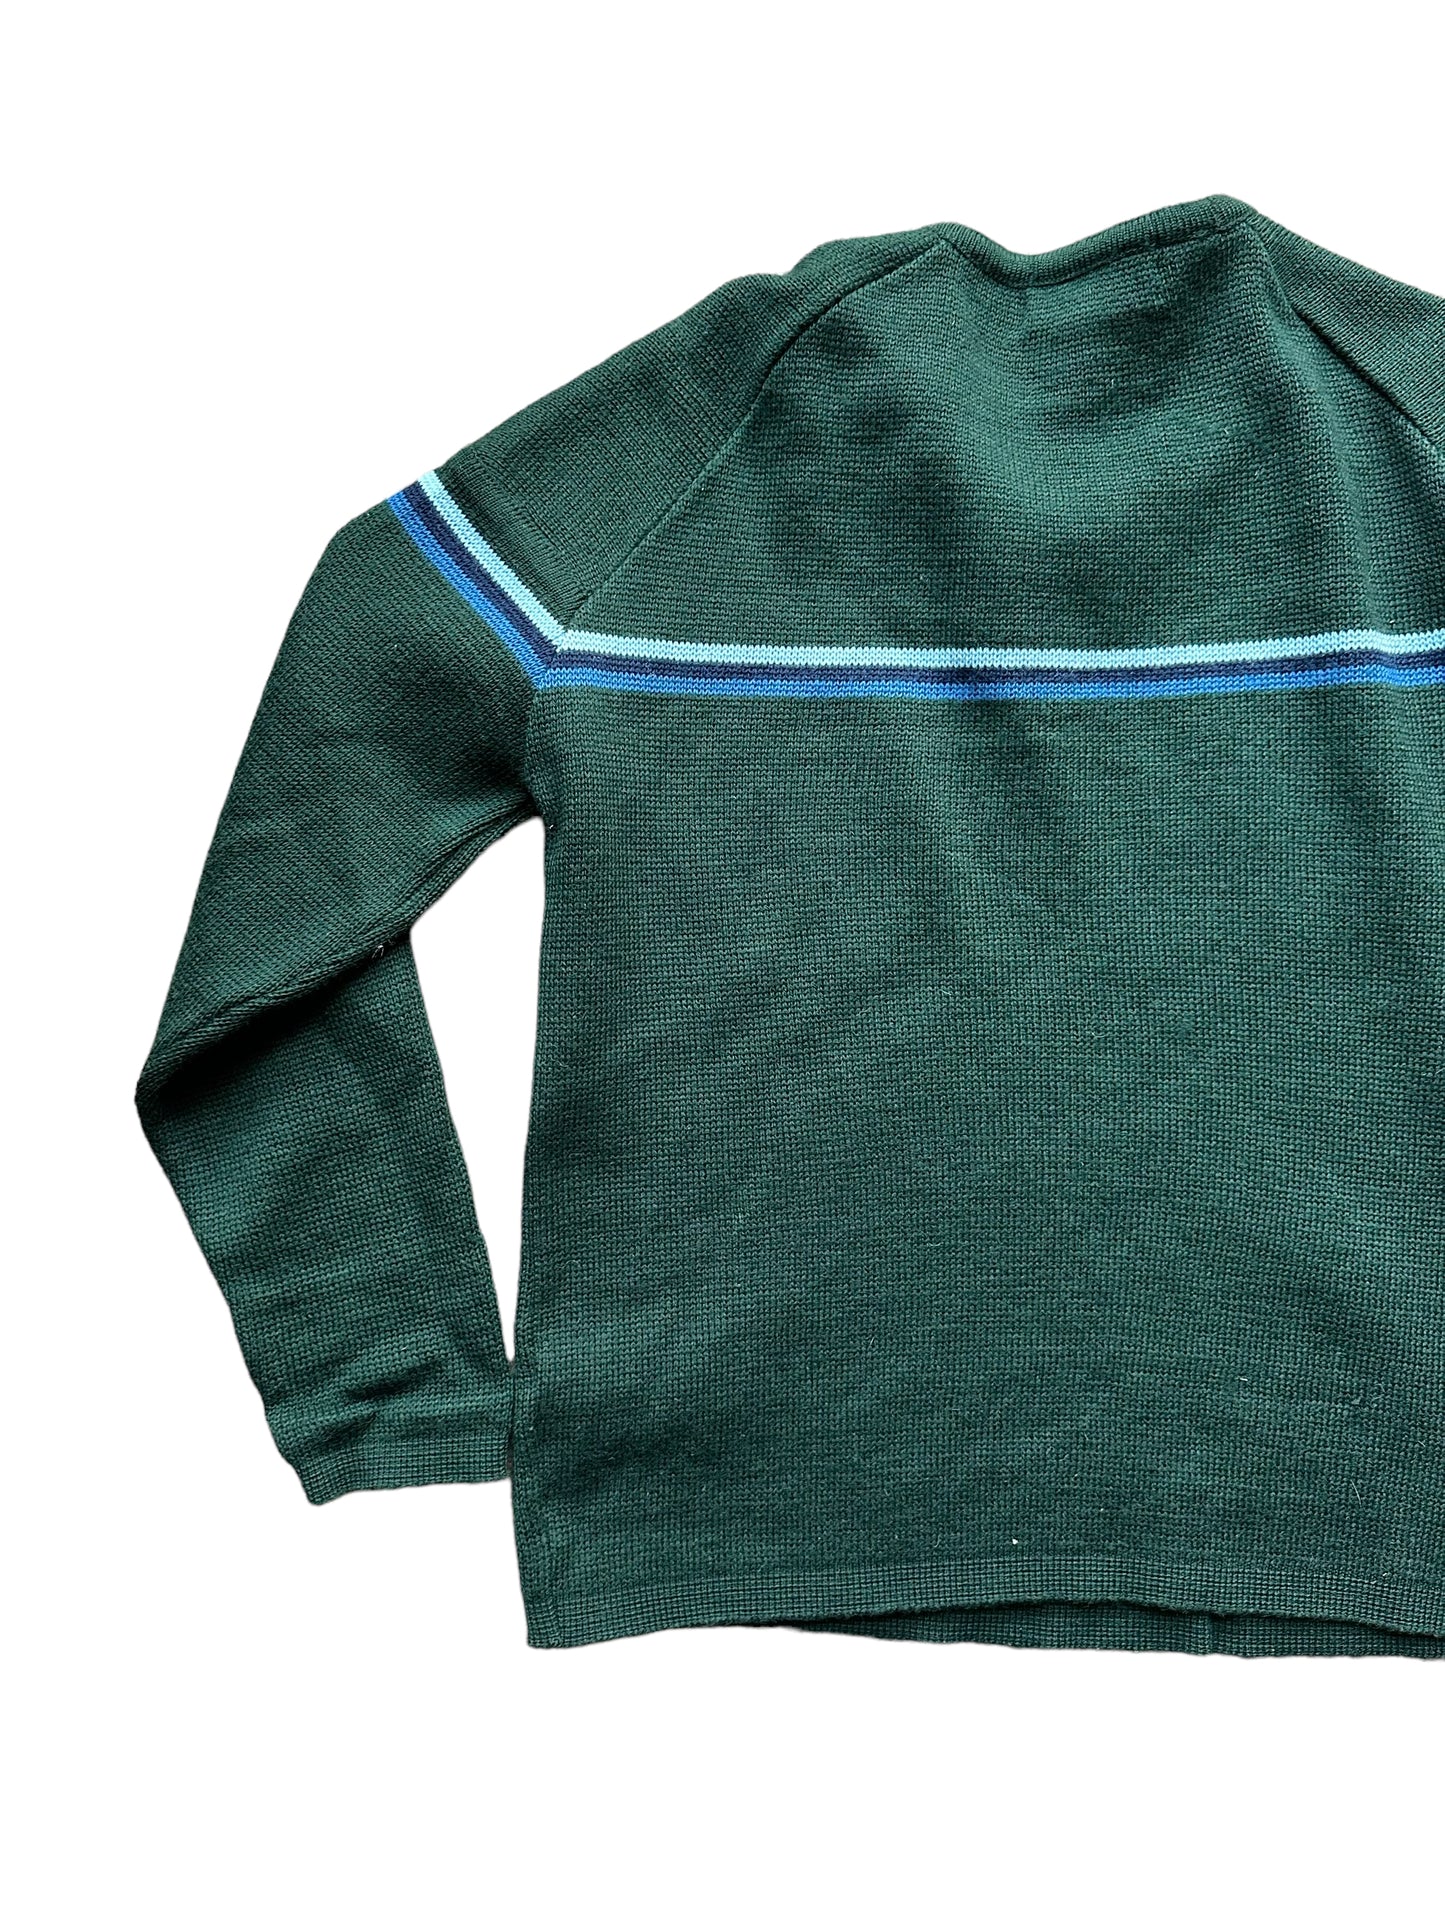 Left Rear View of Vintage Demetre Wool Ski Sweater SZ M |  Vintage Sweaters Seattle | Barn Owl Vintage Seattle